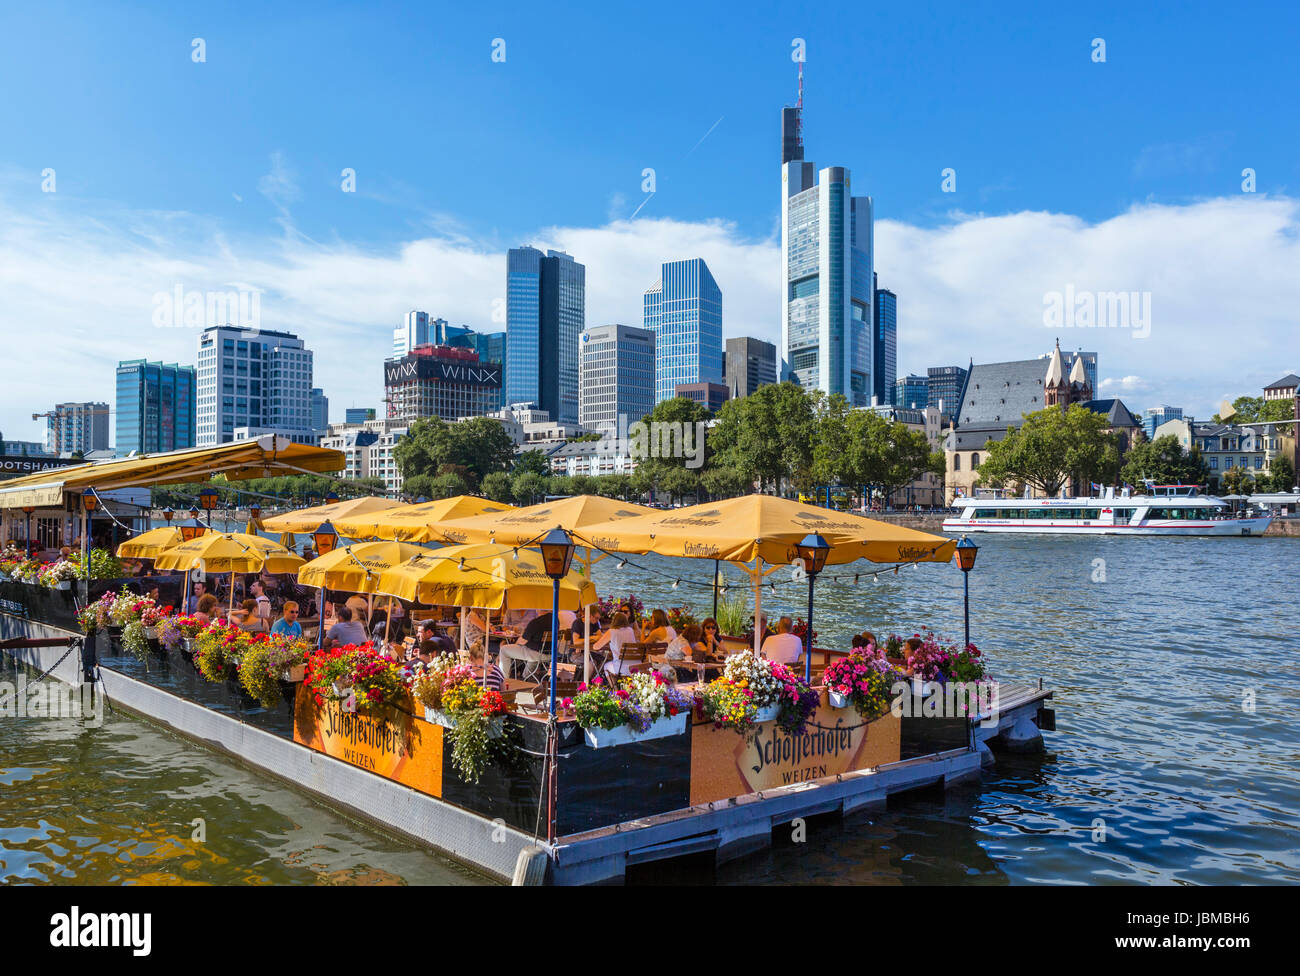 Bootshaus ristorante galleggiante sulle rive del fiume Main con lo skyline del quartiere finanziario dietro, Francoforte Hesse, Germania Foto Stock